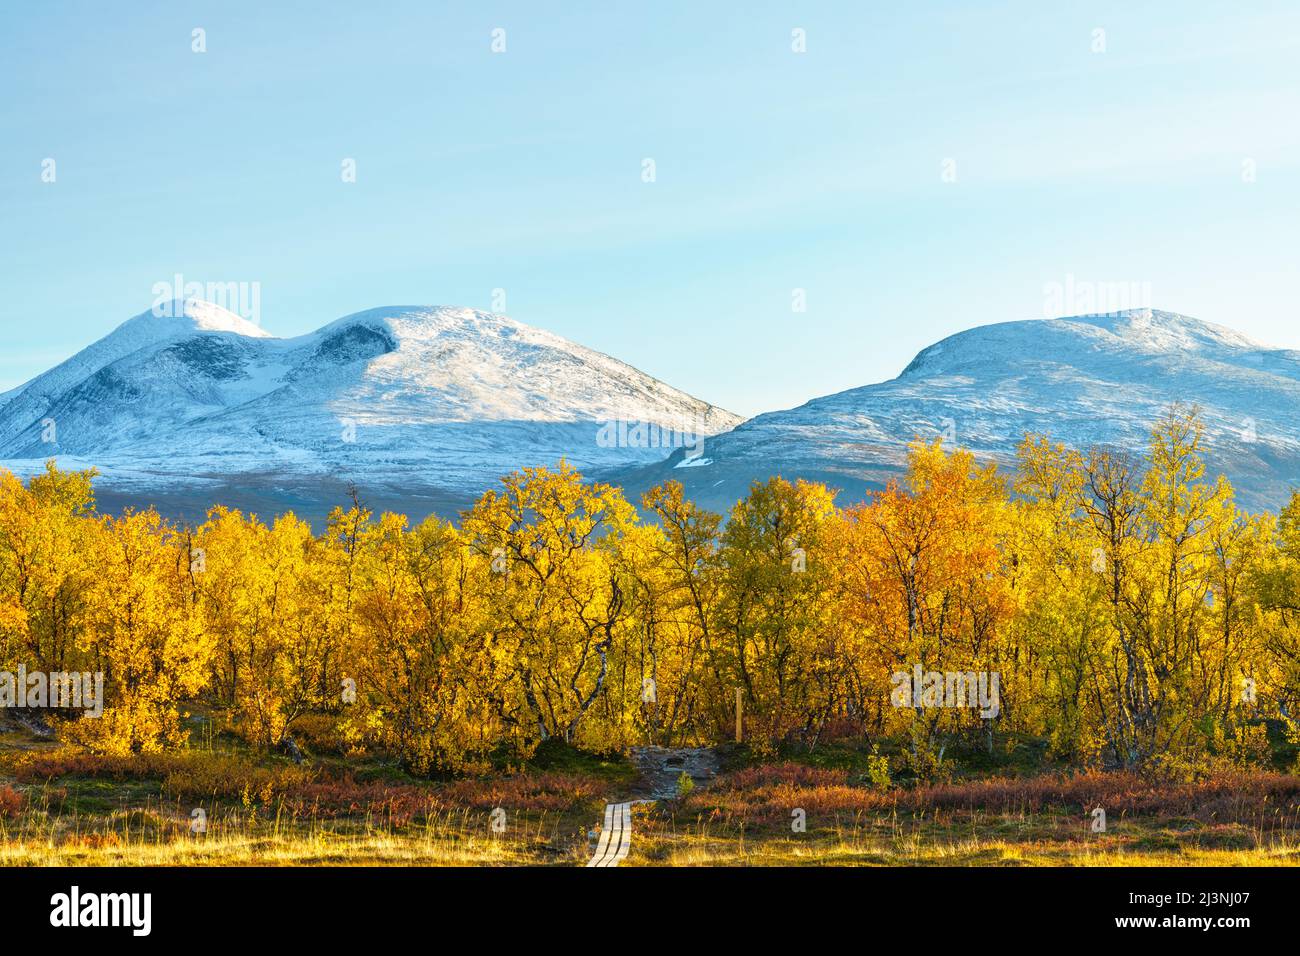 Abisko Nationalpark im september mit Herbstfarben und Schnee auf den Bergen, Abisko Nationalpark, Schwedisch Lappland, Schweden Stockfoto